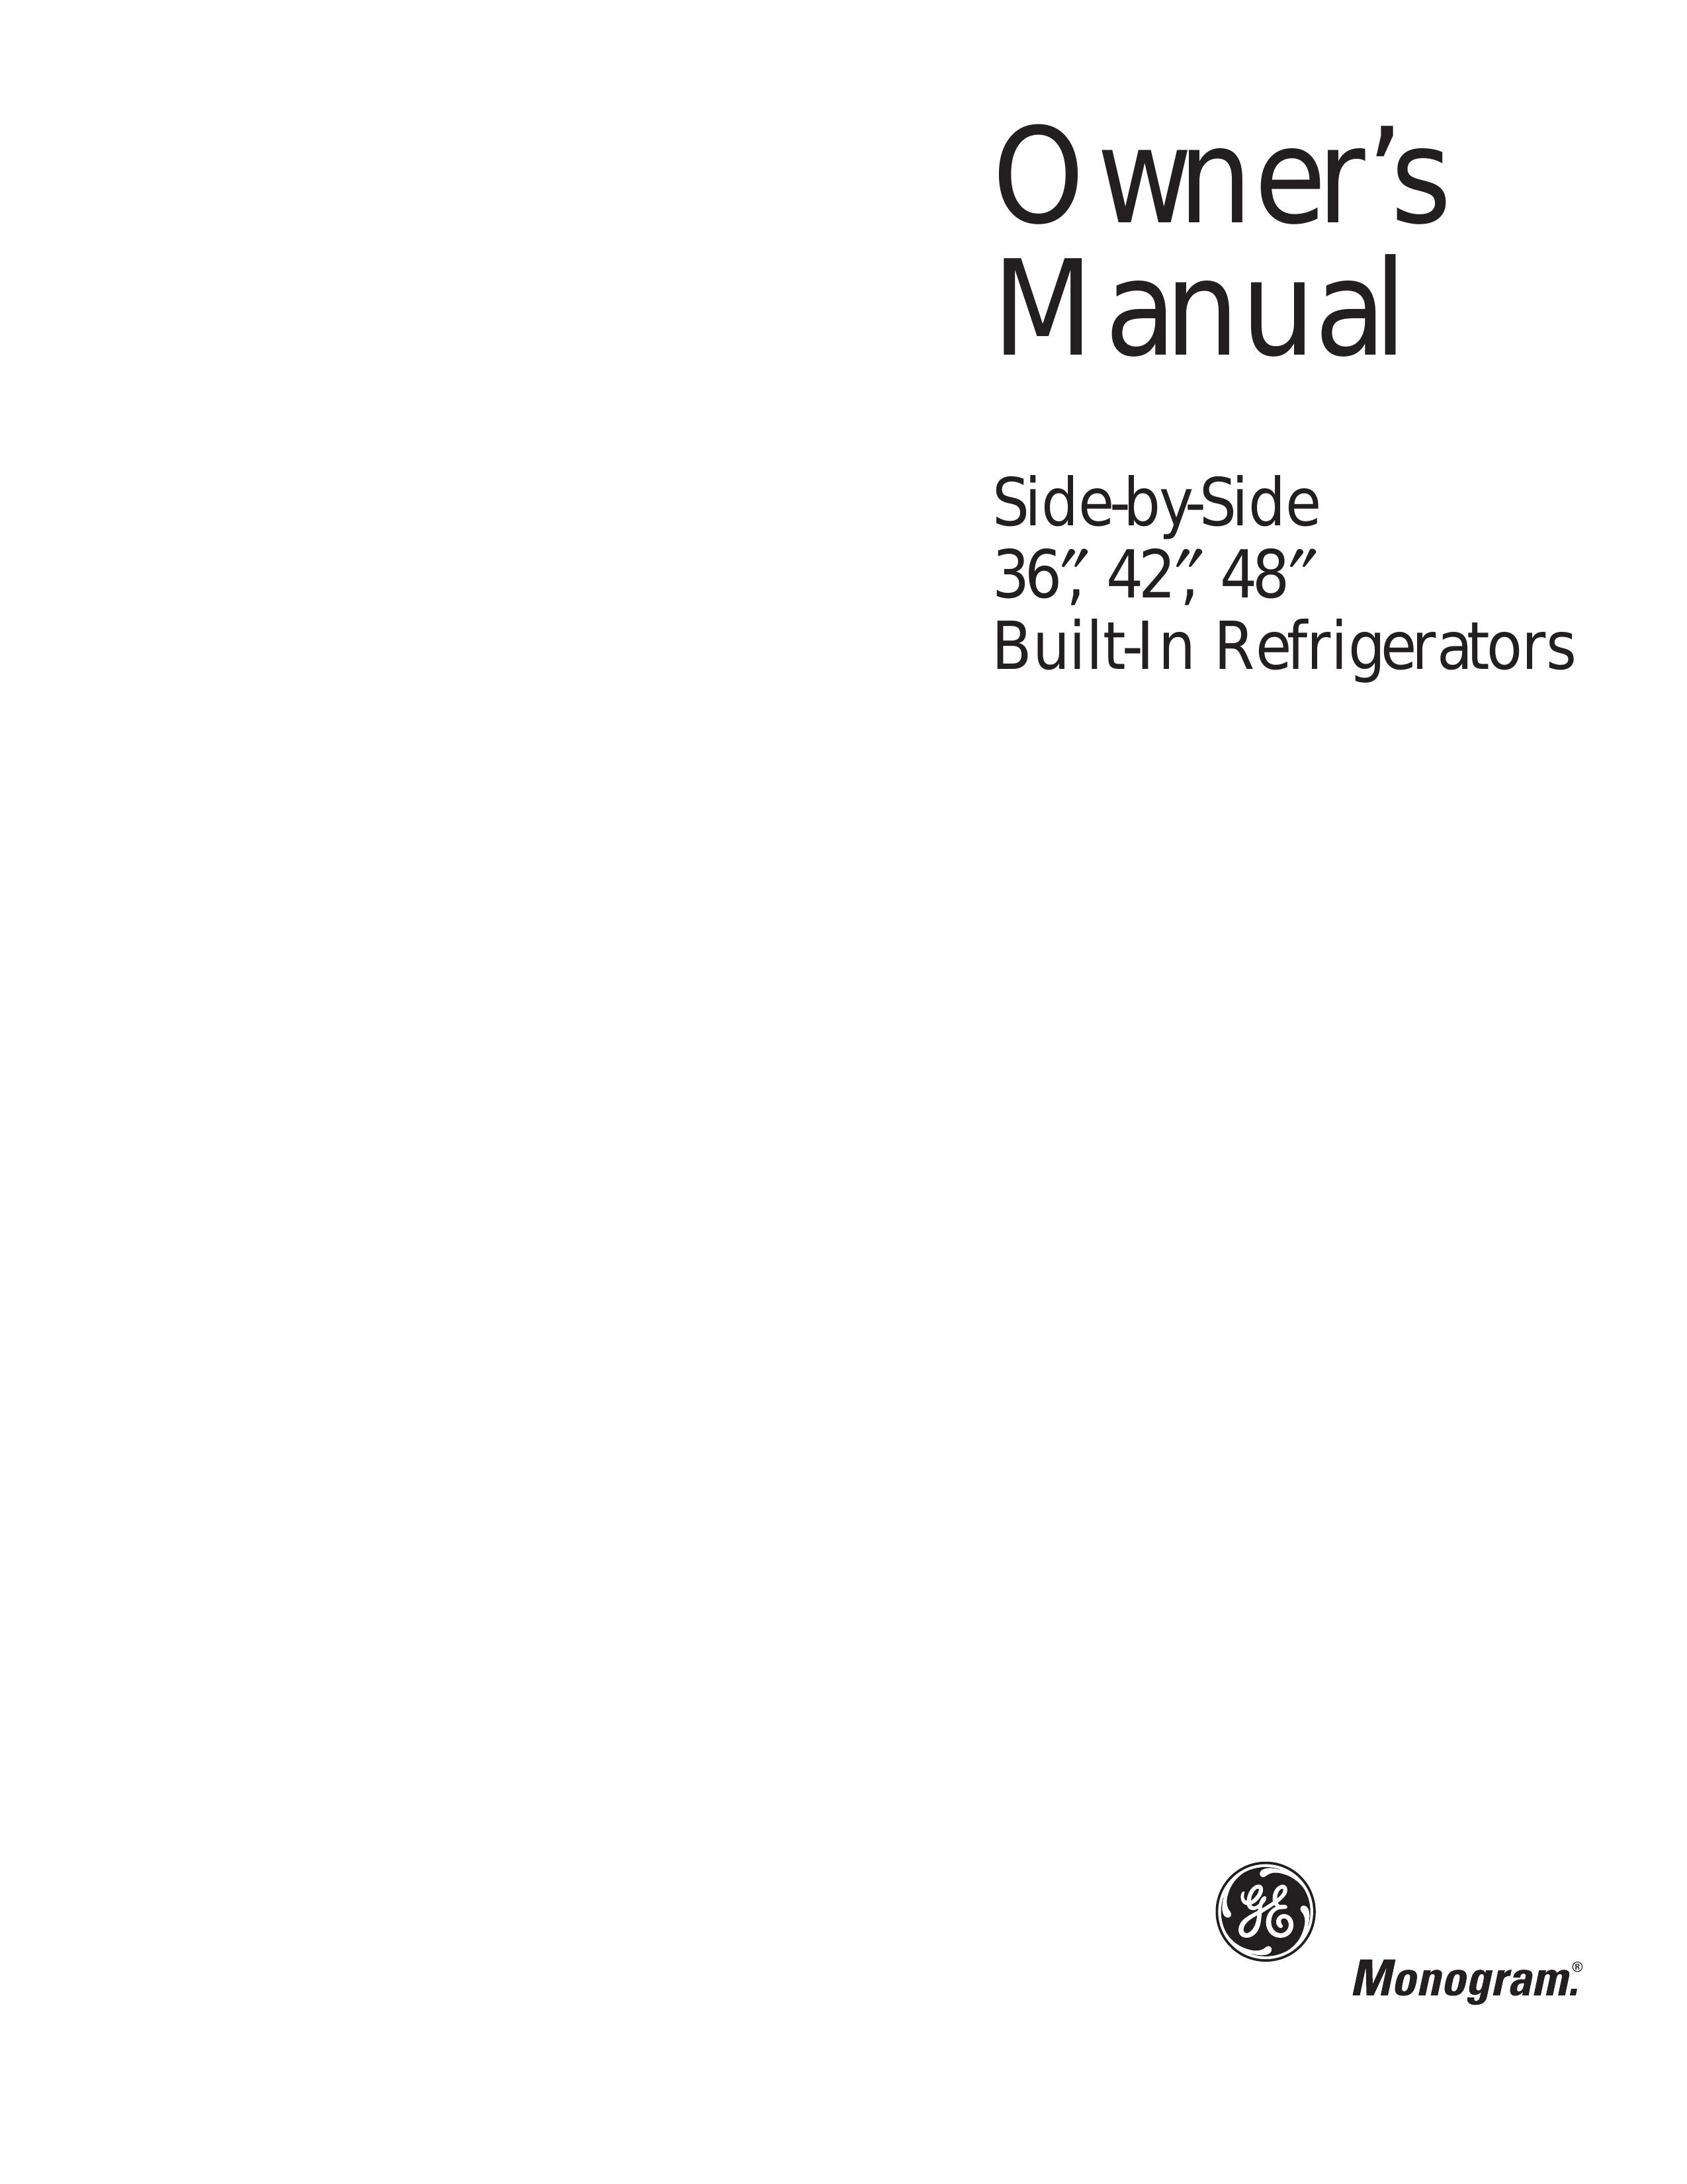 GE Monogram Built-In Refrigerators Refrigerator User Manual